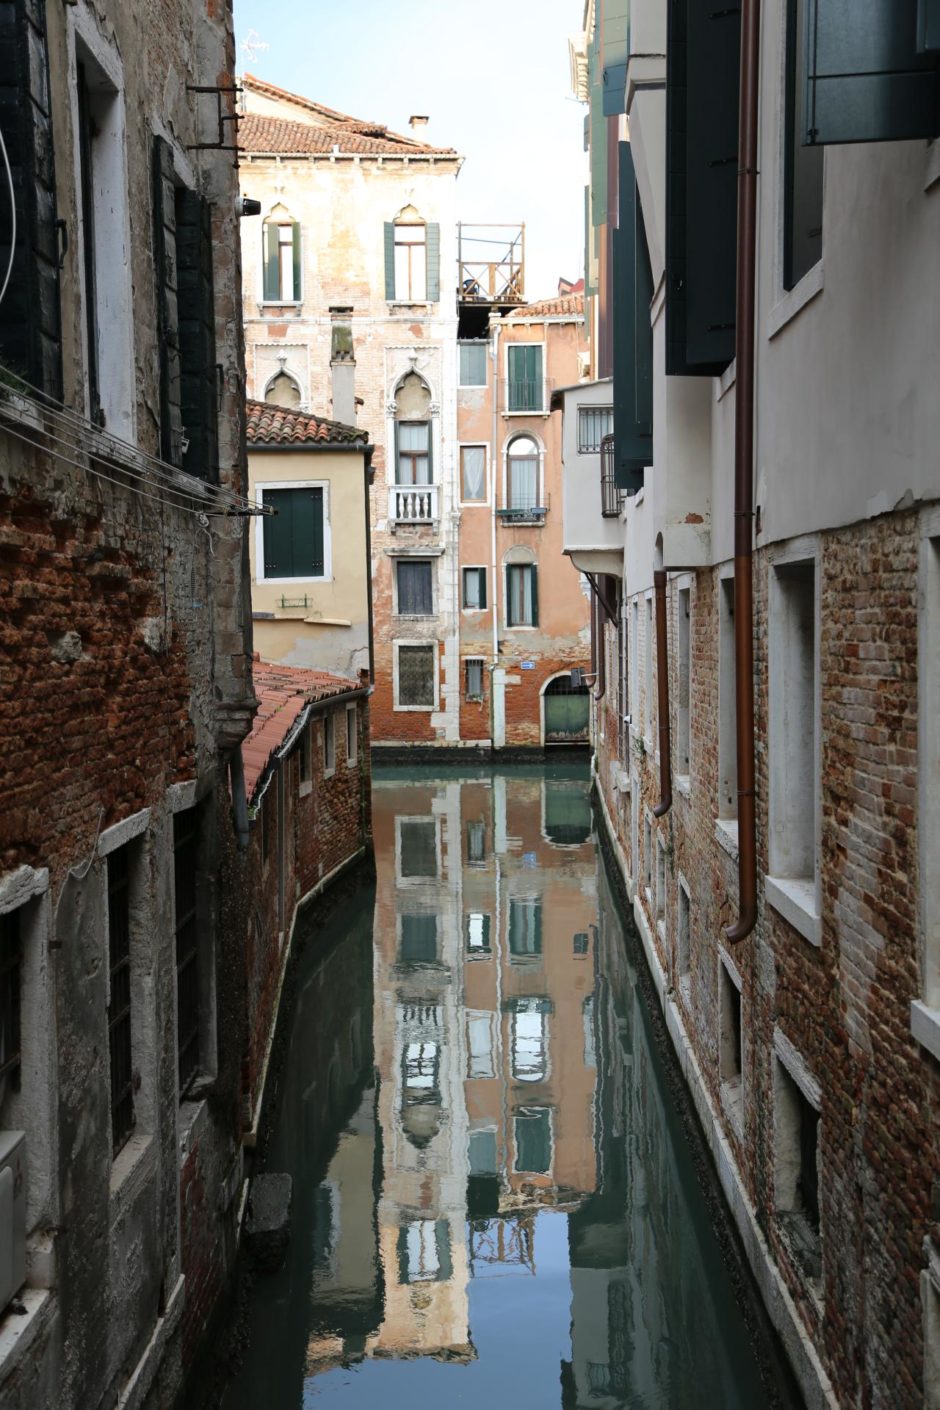 Spiegelungen am Rio del Pestrin - Gebäude, Kanäle, Rio del Pestrin, Spiegelungen - (Rialto, San Marco, Veneto, Italien)